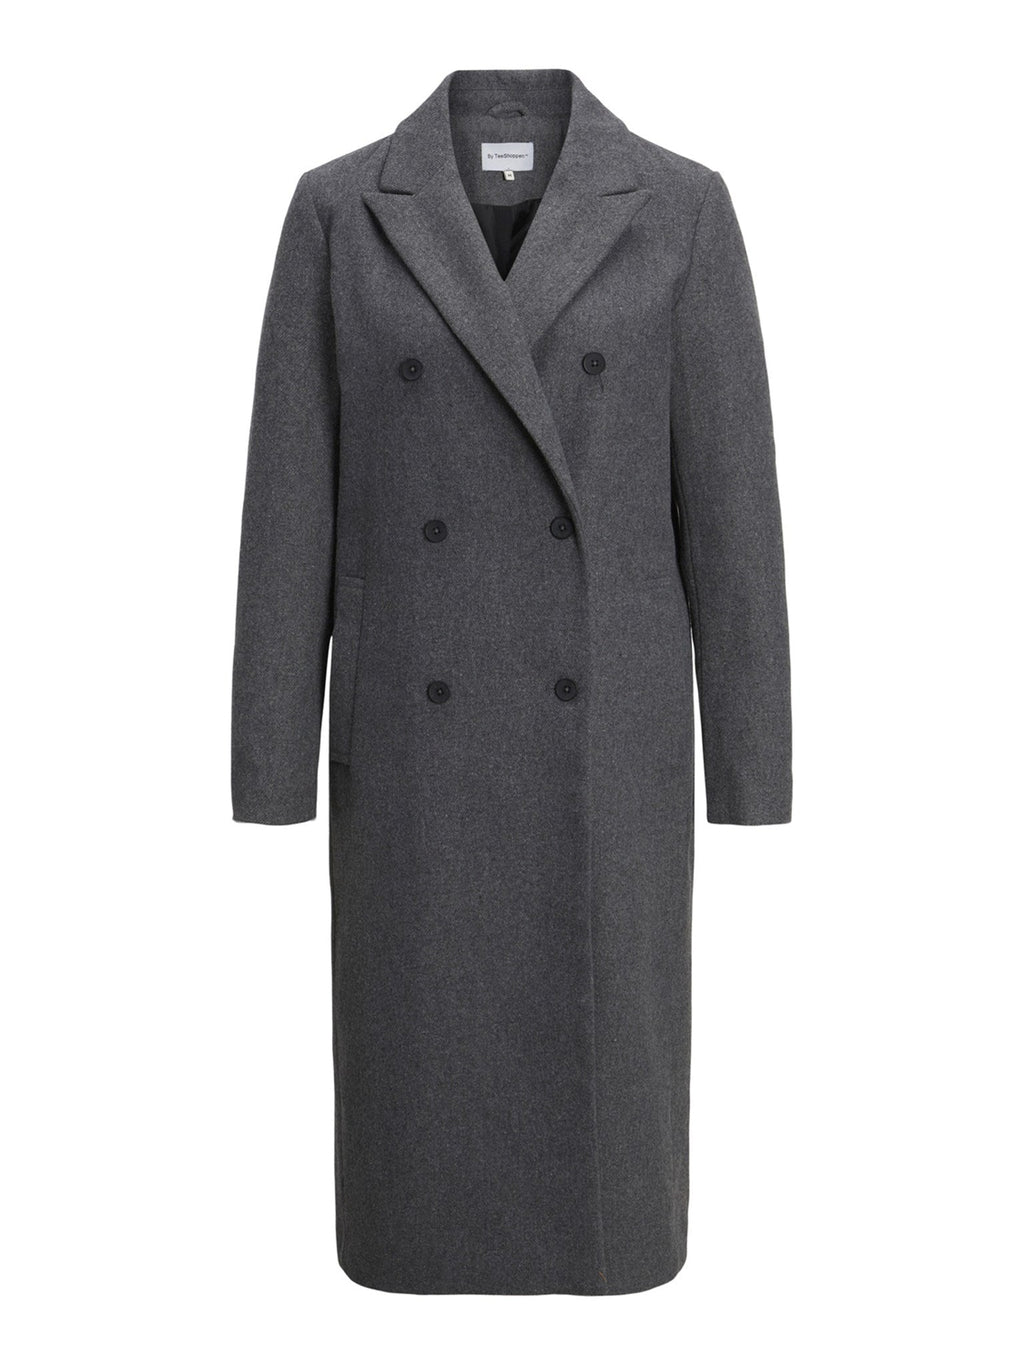 Classico cappotto di lana - melange grigio scuro